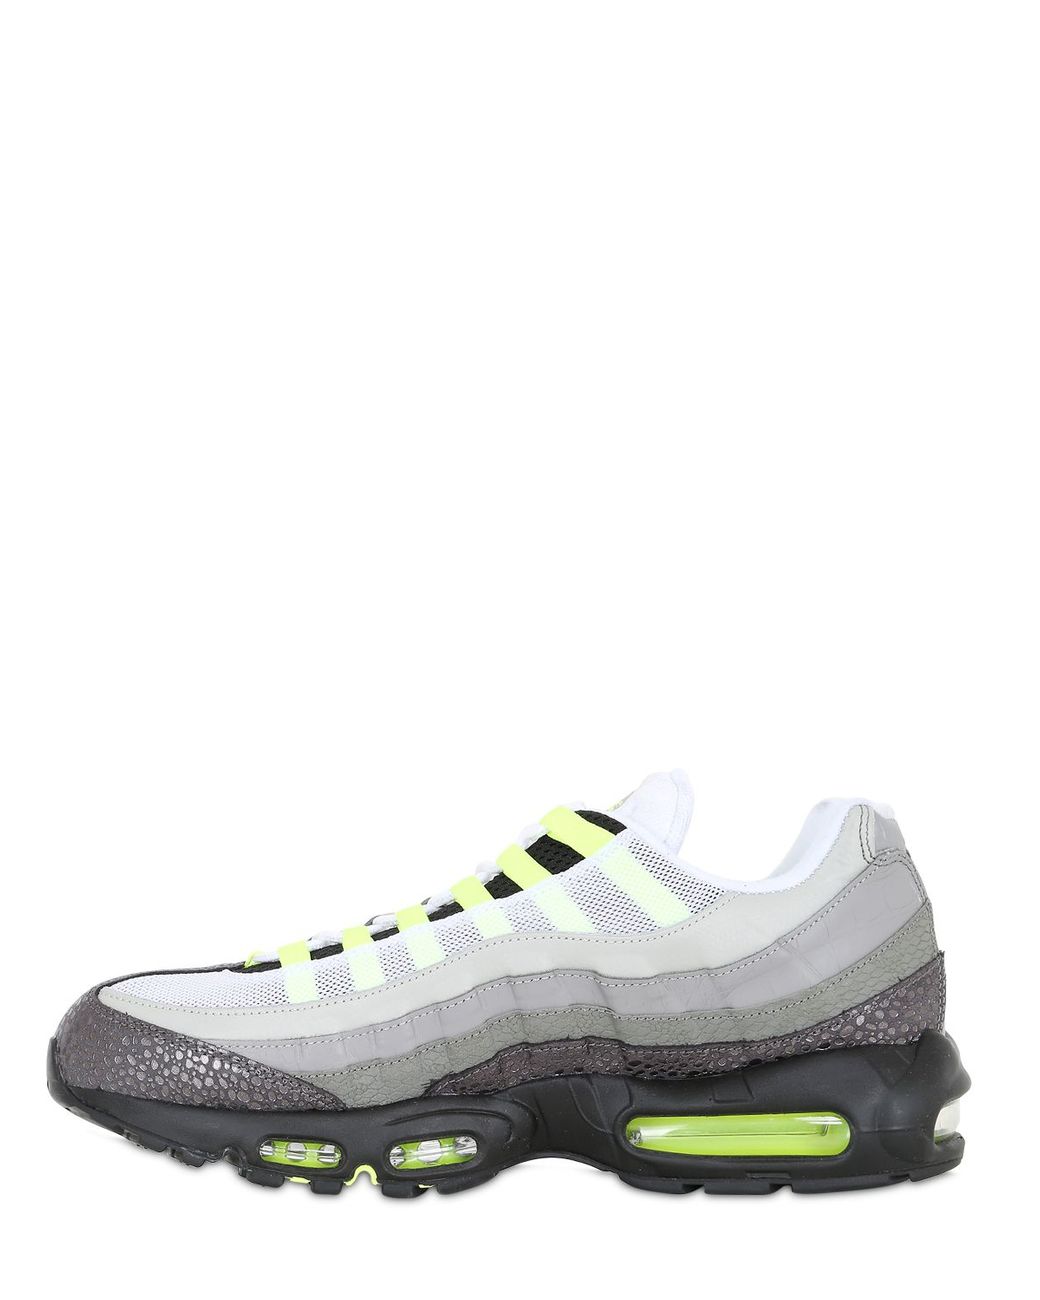 Nike Leather Air Max 95 Original Premium Sneakers in Grey/Green (Green) for  Men | Lyst UK